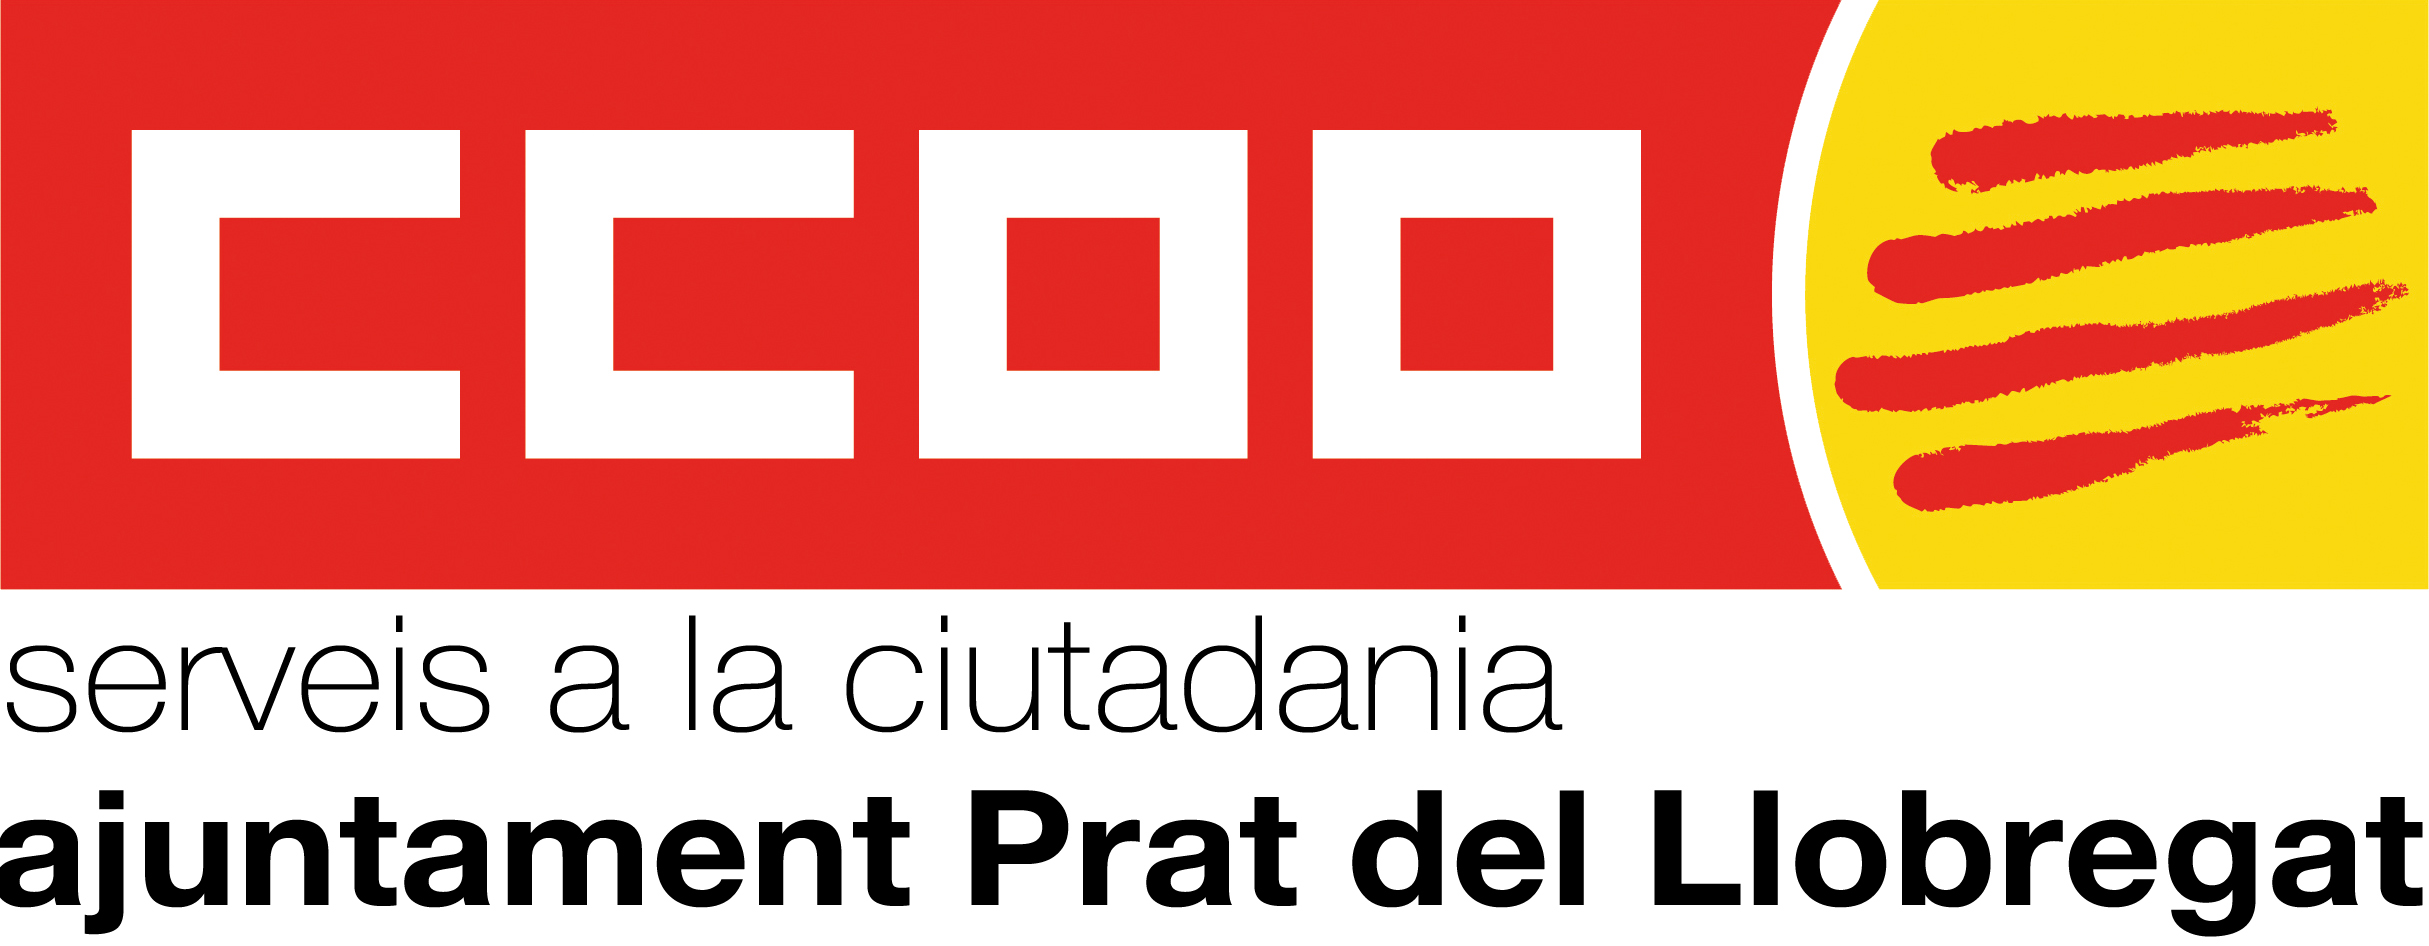 Logos Jpg Negre El Prat